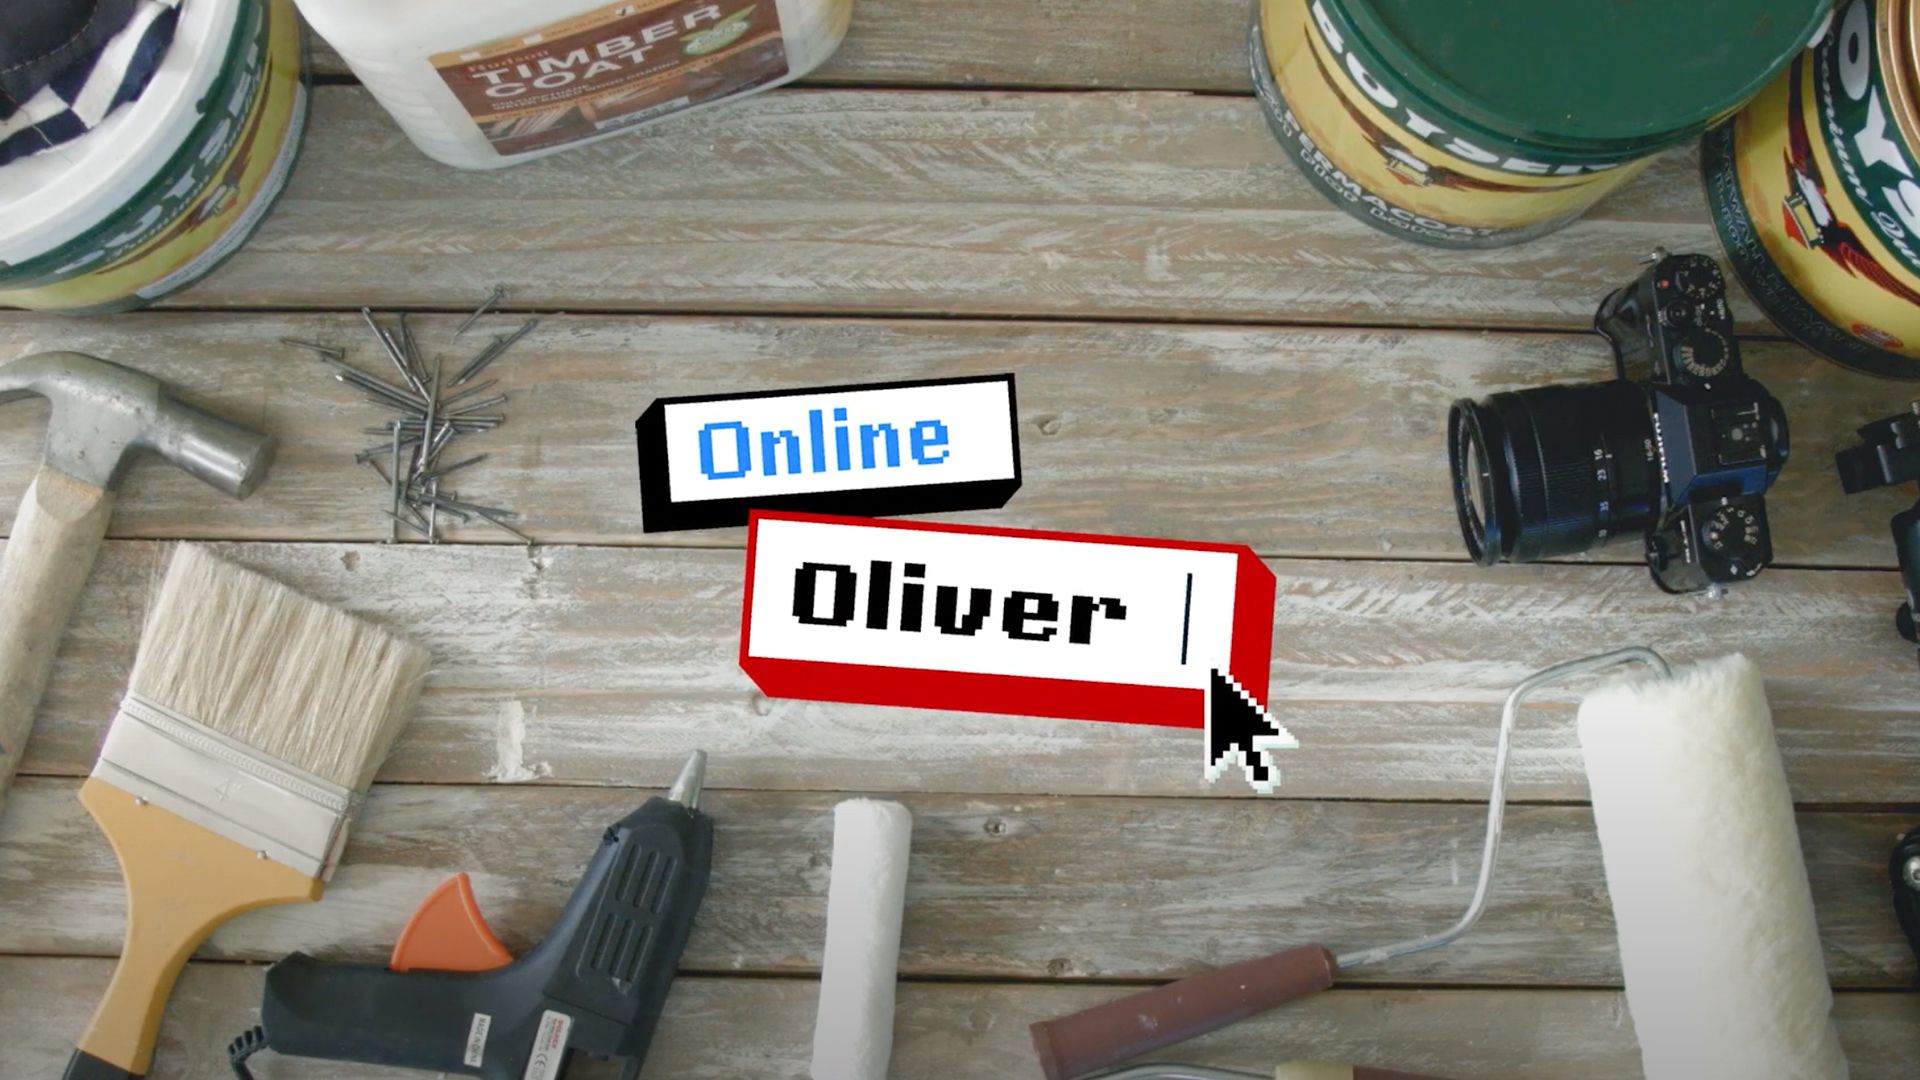 BOYSEN DIY Online Oliver